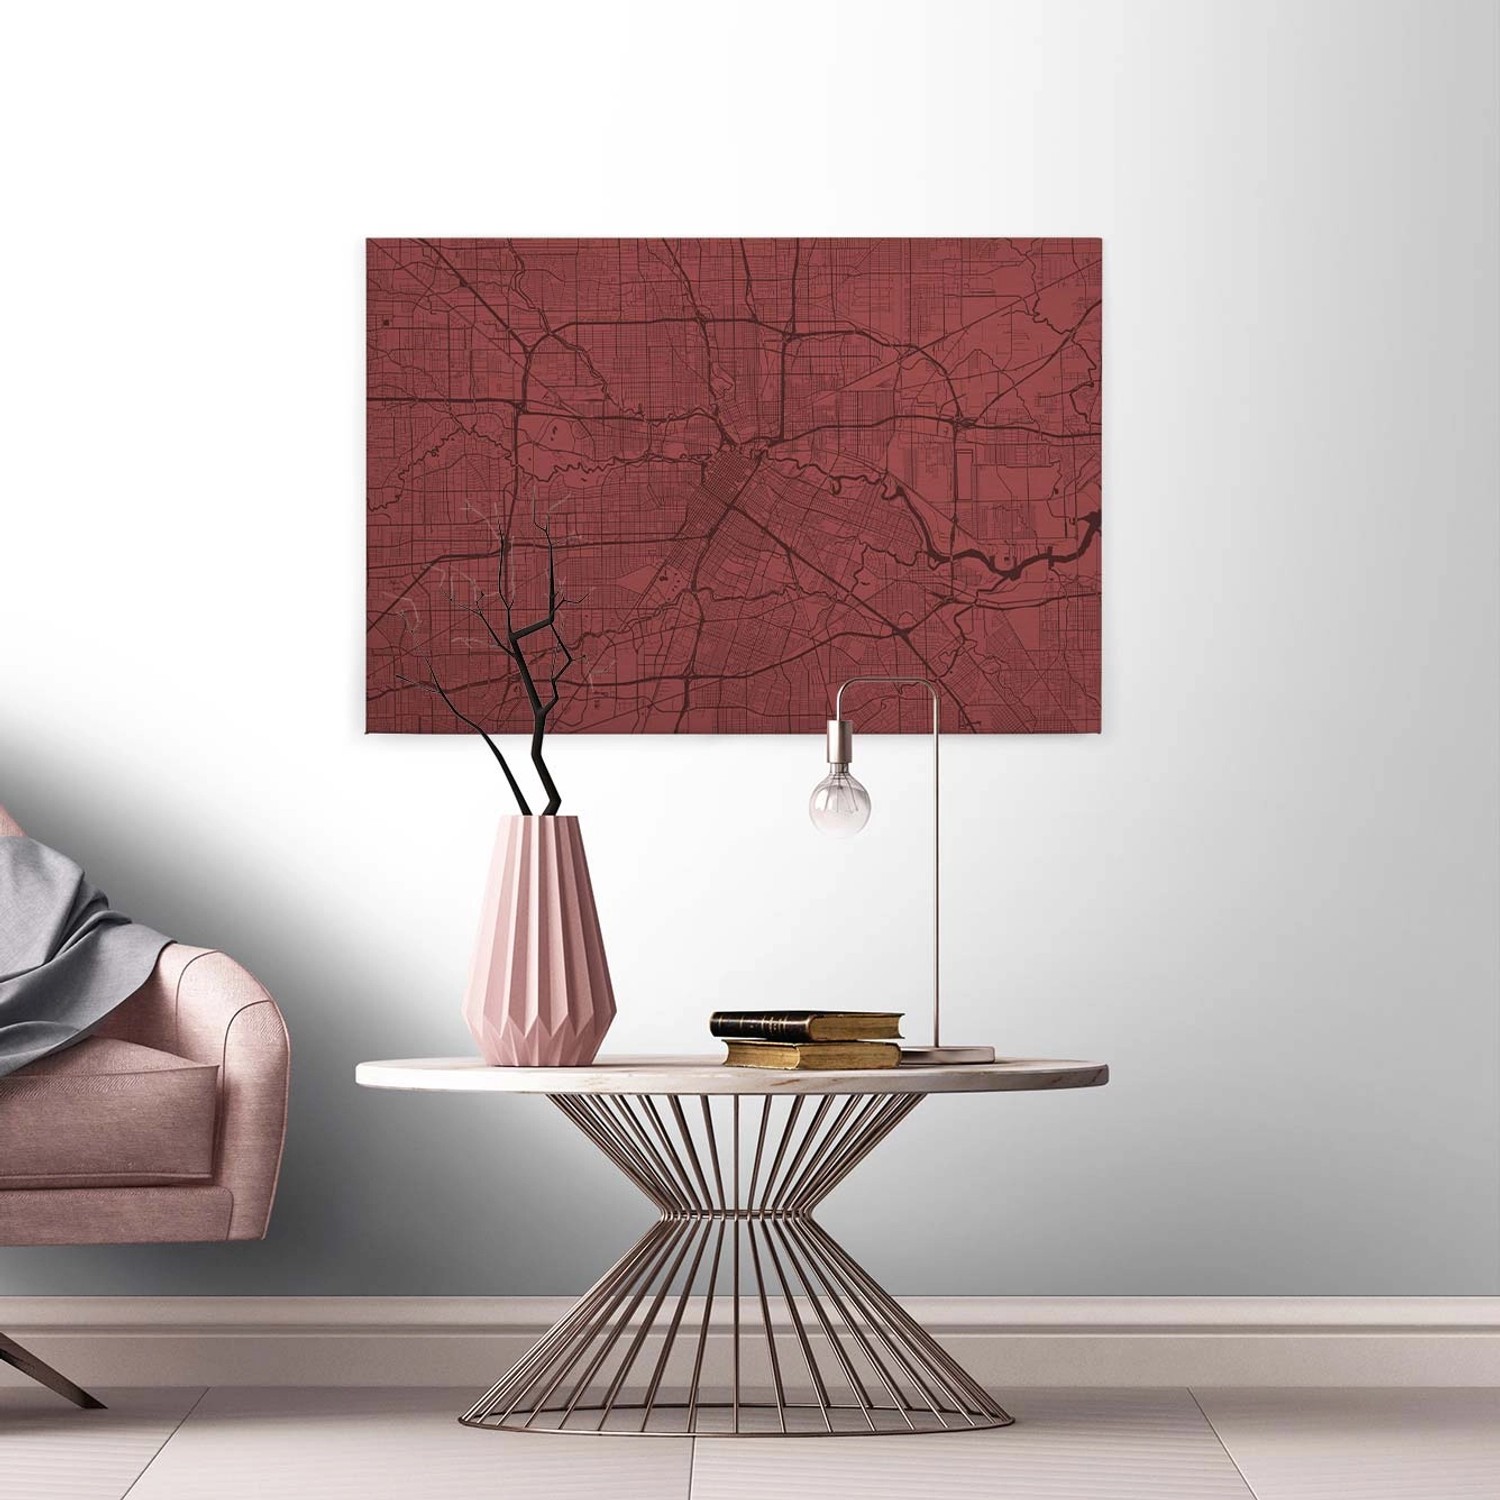 Bricoflor Stadtplan Bild Auf Leinwand In Dunkelrot Modernes Leinwand Bild Mit Stadtkarte Rotes Wandbild Für Schlafzimmer